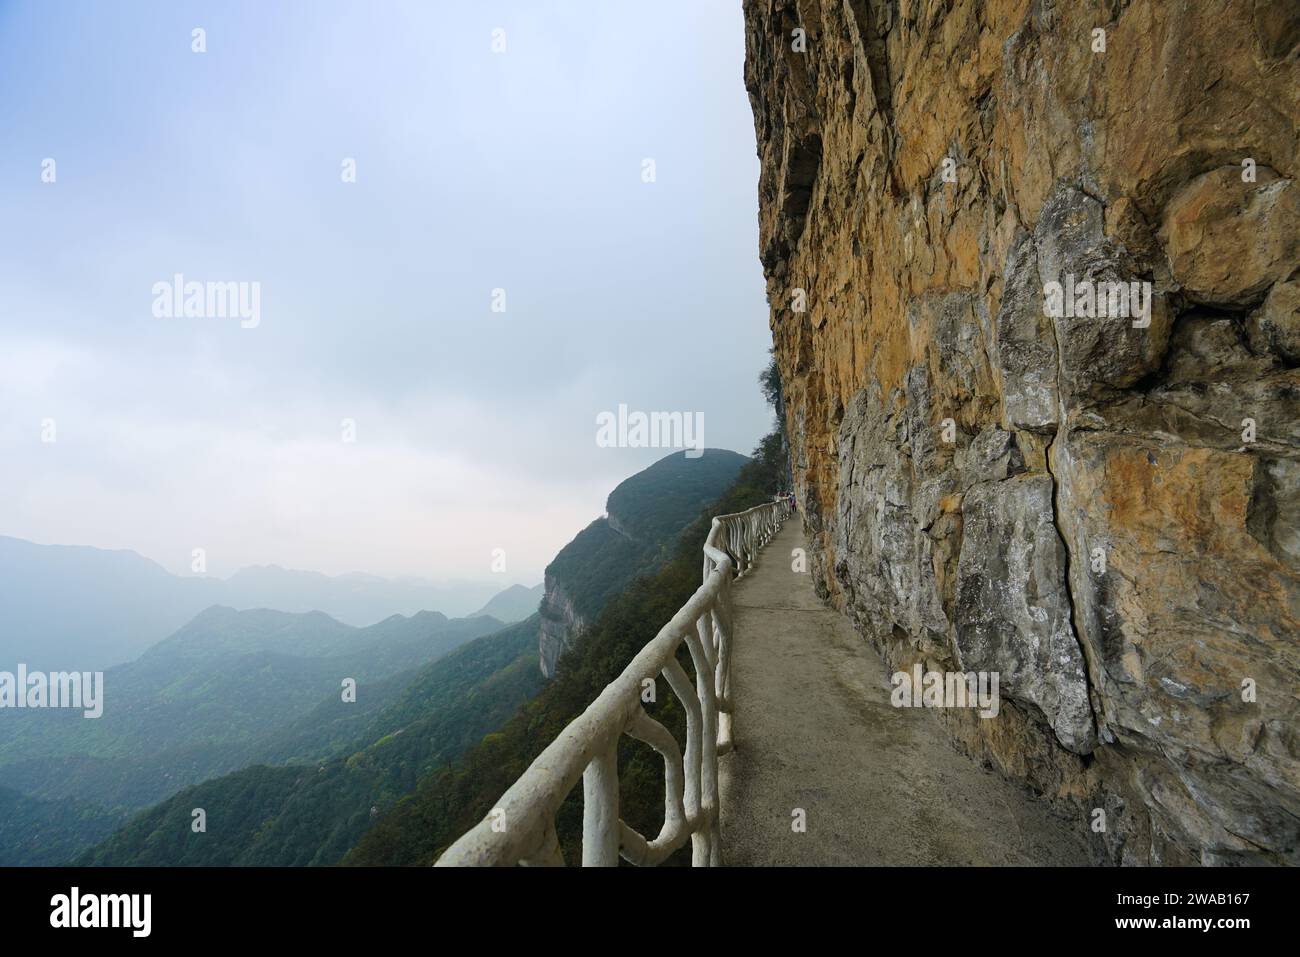 Il sentiero sul muro di montagna è circondato da nuvole e nebbia in lontananza. Topografia carsica della montagna di Jinfo, biodiversità e cultura buddista, C Foto Stock